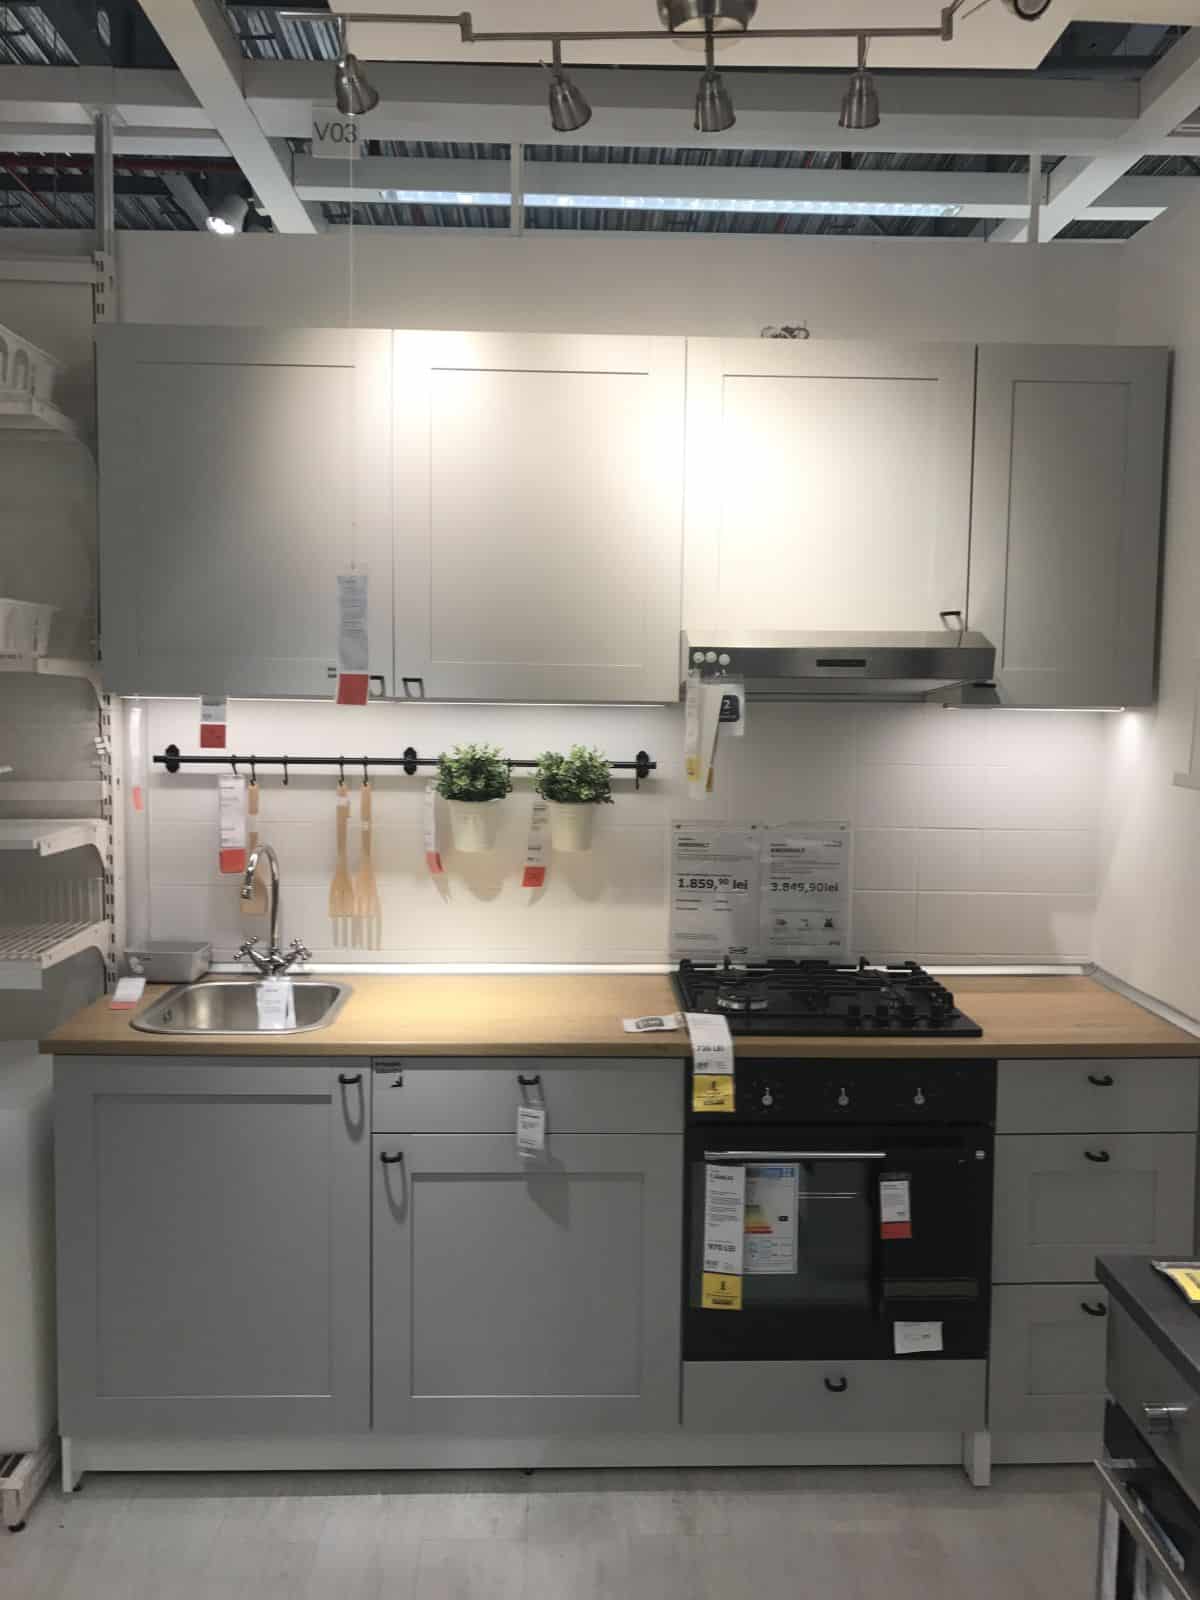 Les modèles de cuisine IKEA de base sont les plus faciles à installer en tant que projet de bricolage.